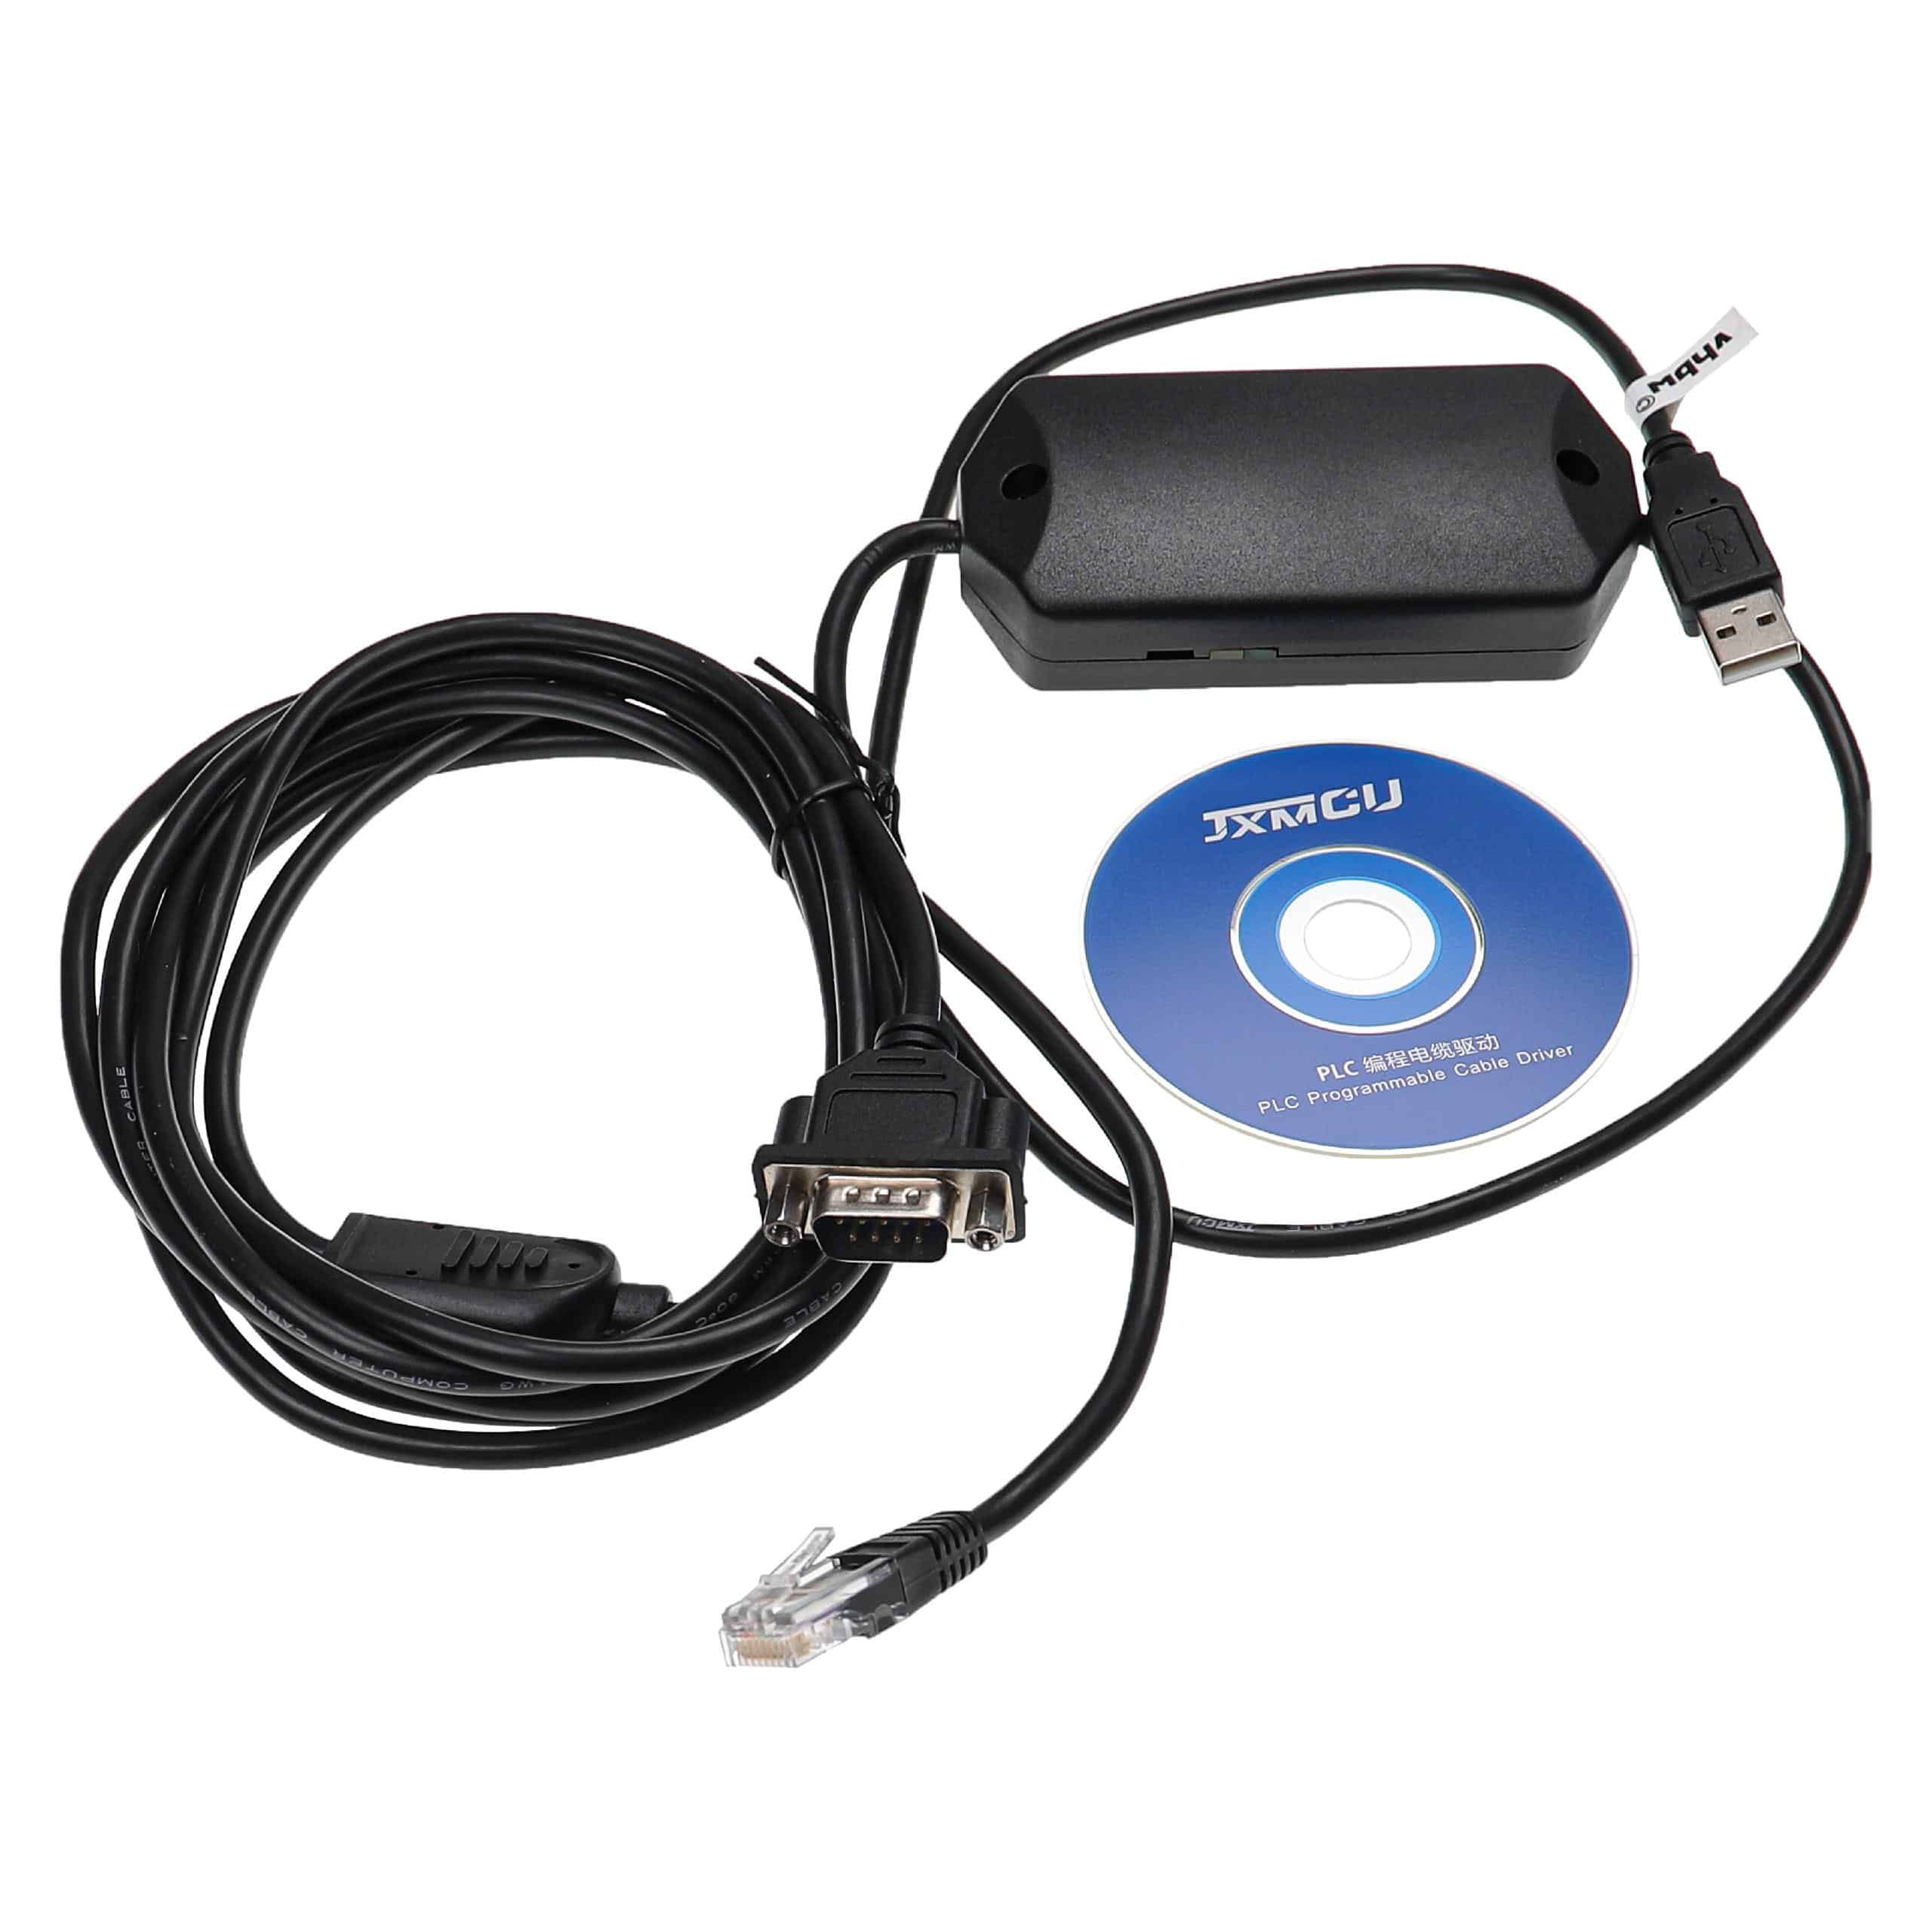 Cable programación RS-232 para equipo radio ABSLC5/01/02/03/05 - Adaptador + CD driver 300cm negro